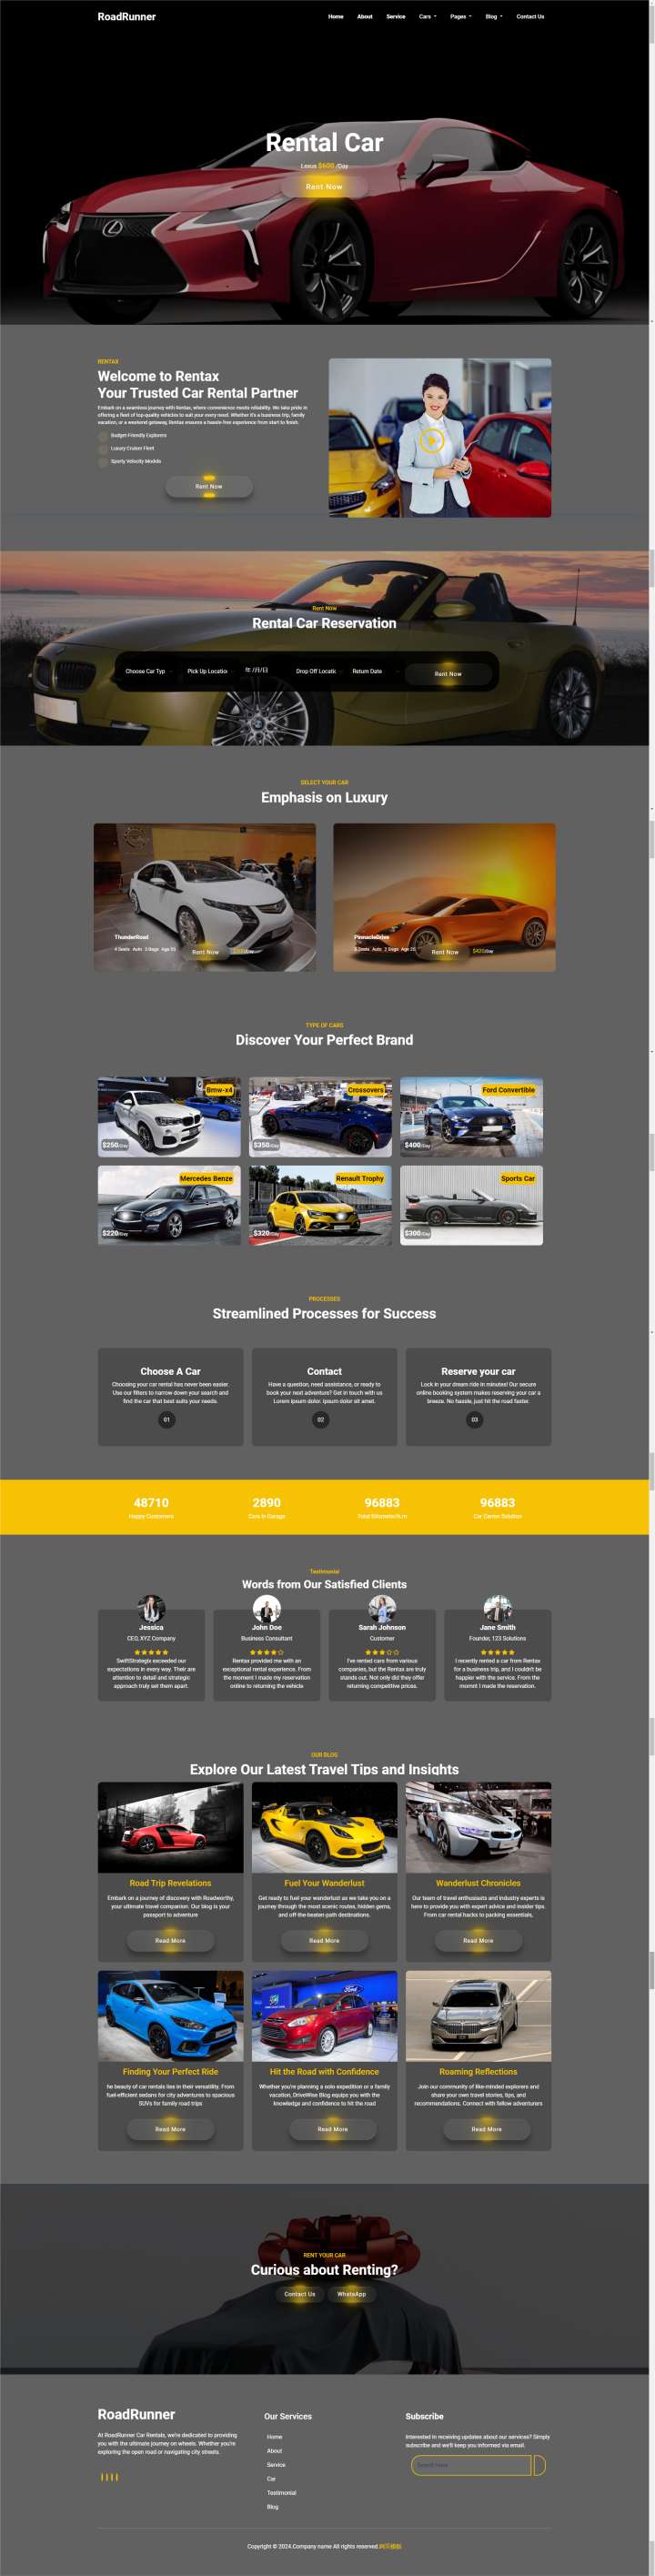 约车服务公司网页设计制作模板